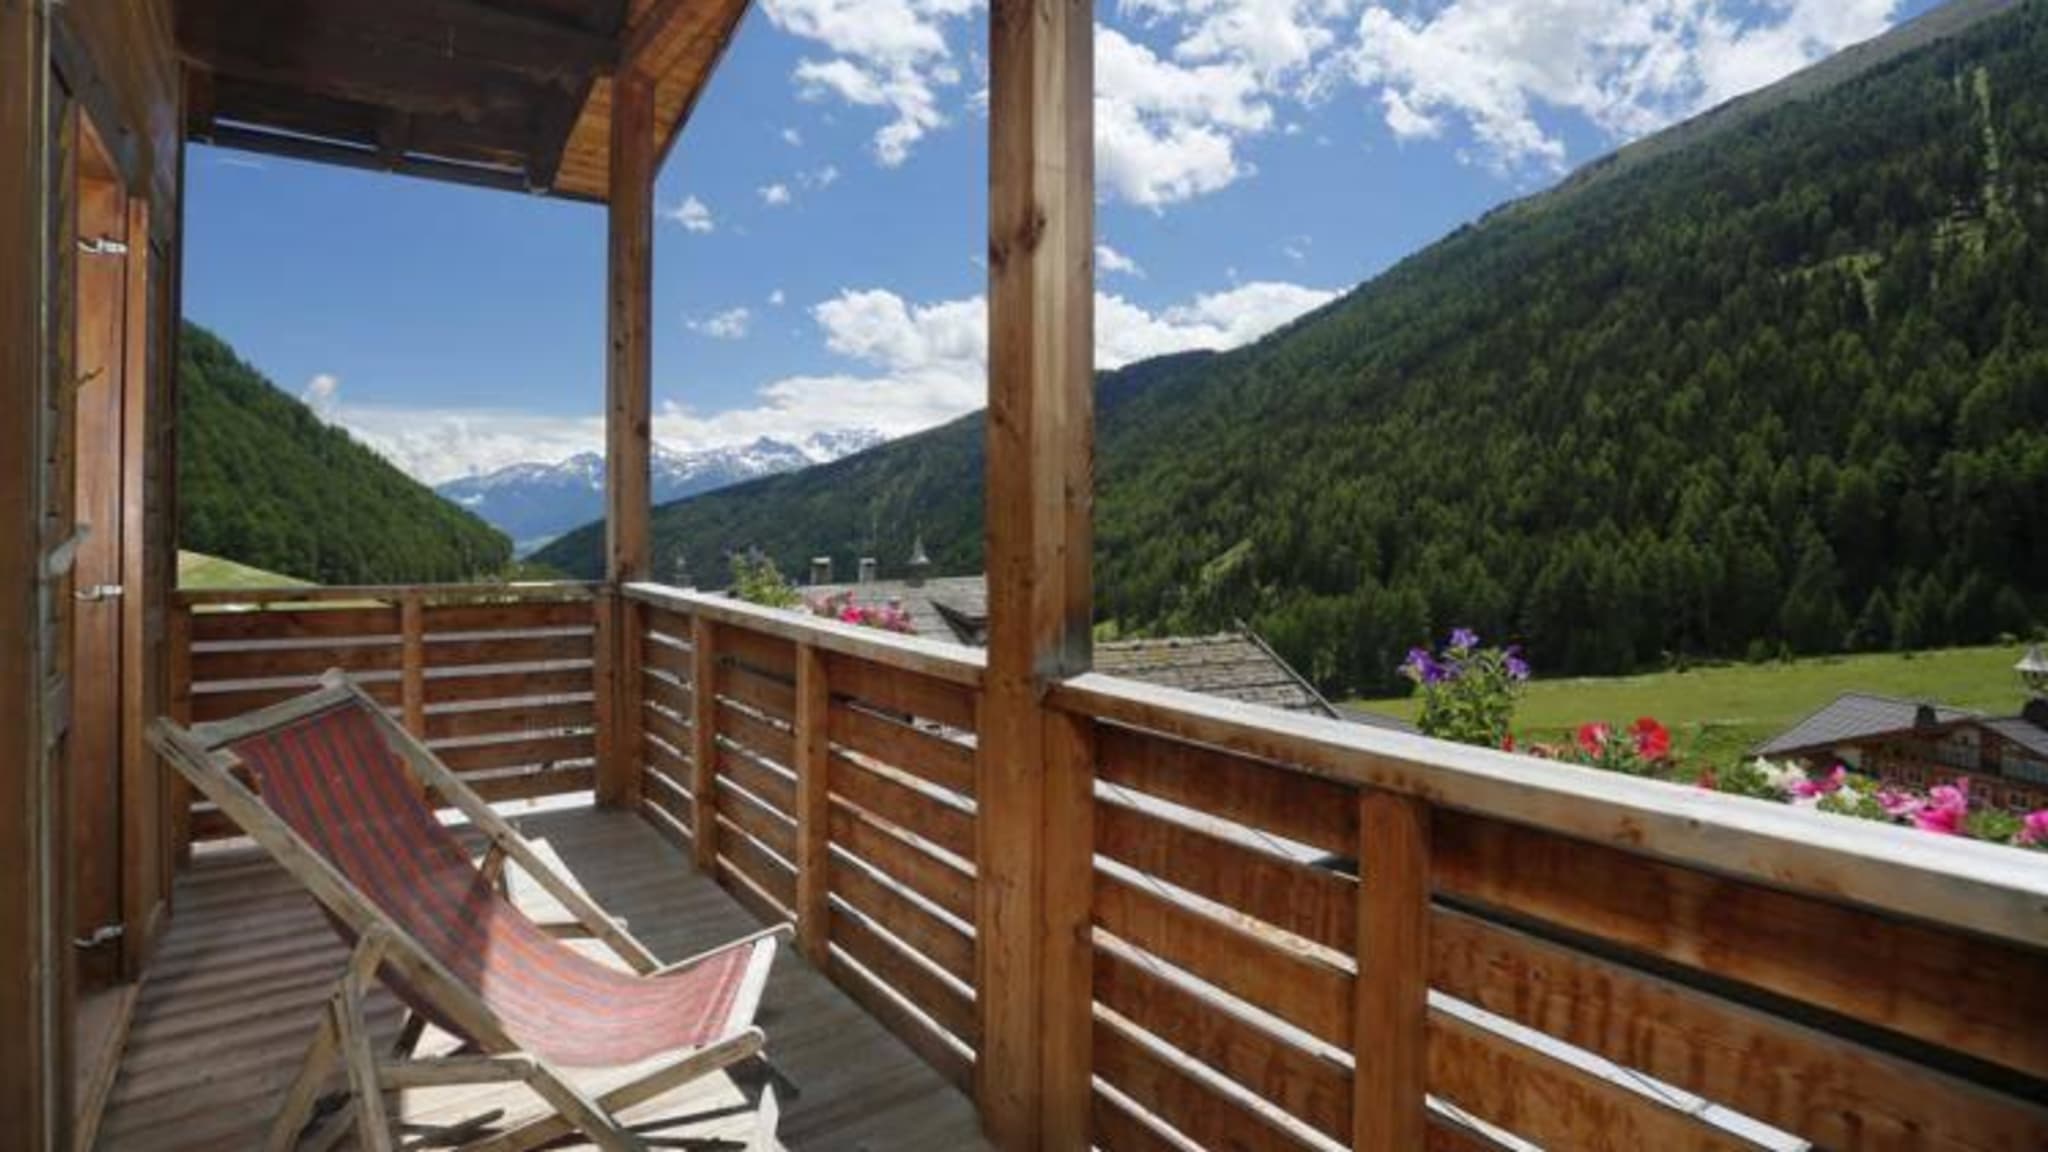 Hotel Edelweiss Schlinig, Mals im Vinschgau, Südtirol